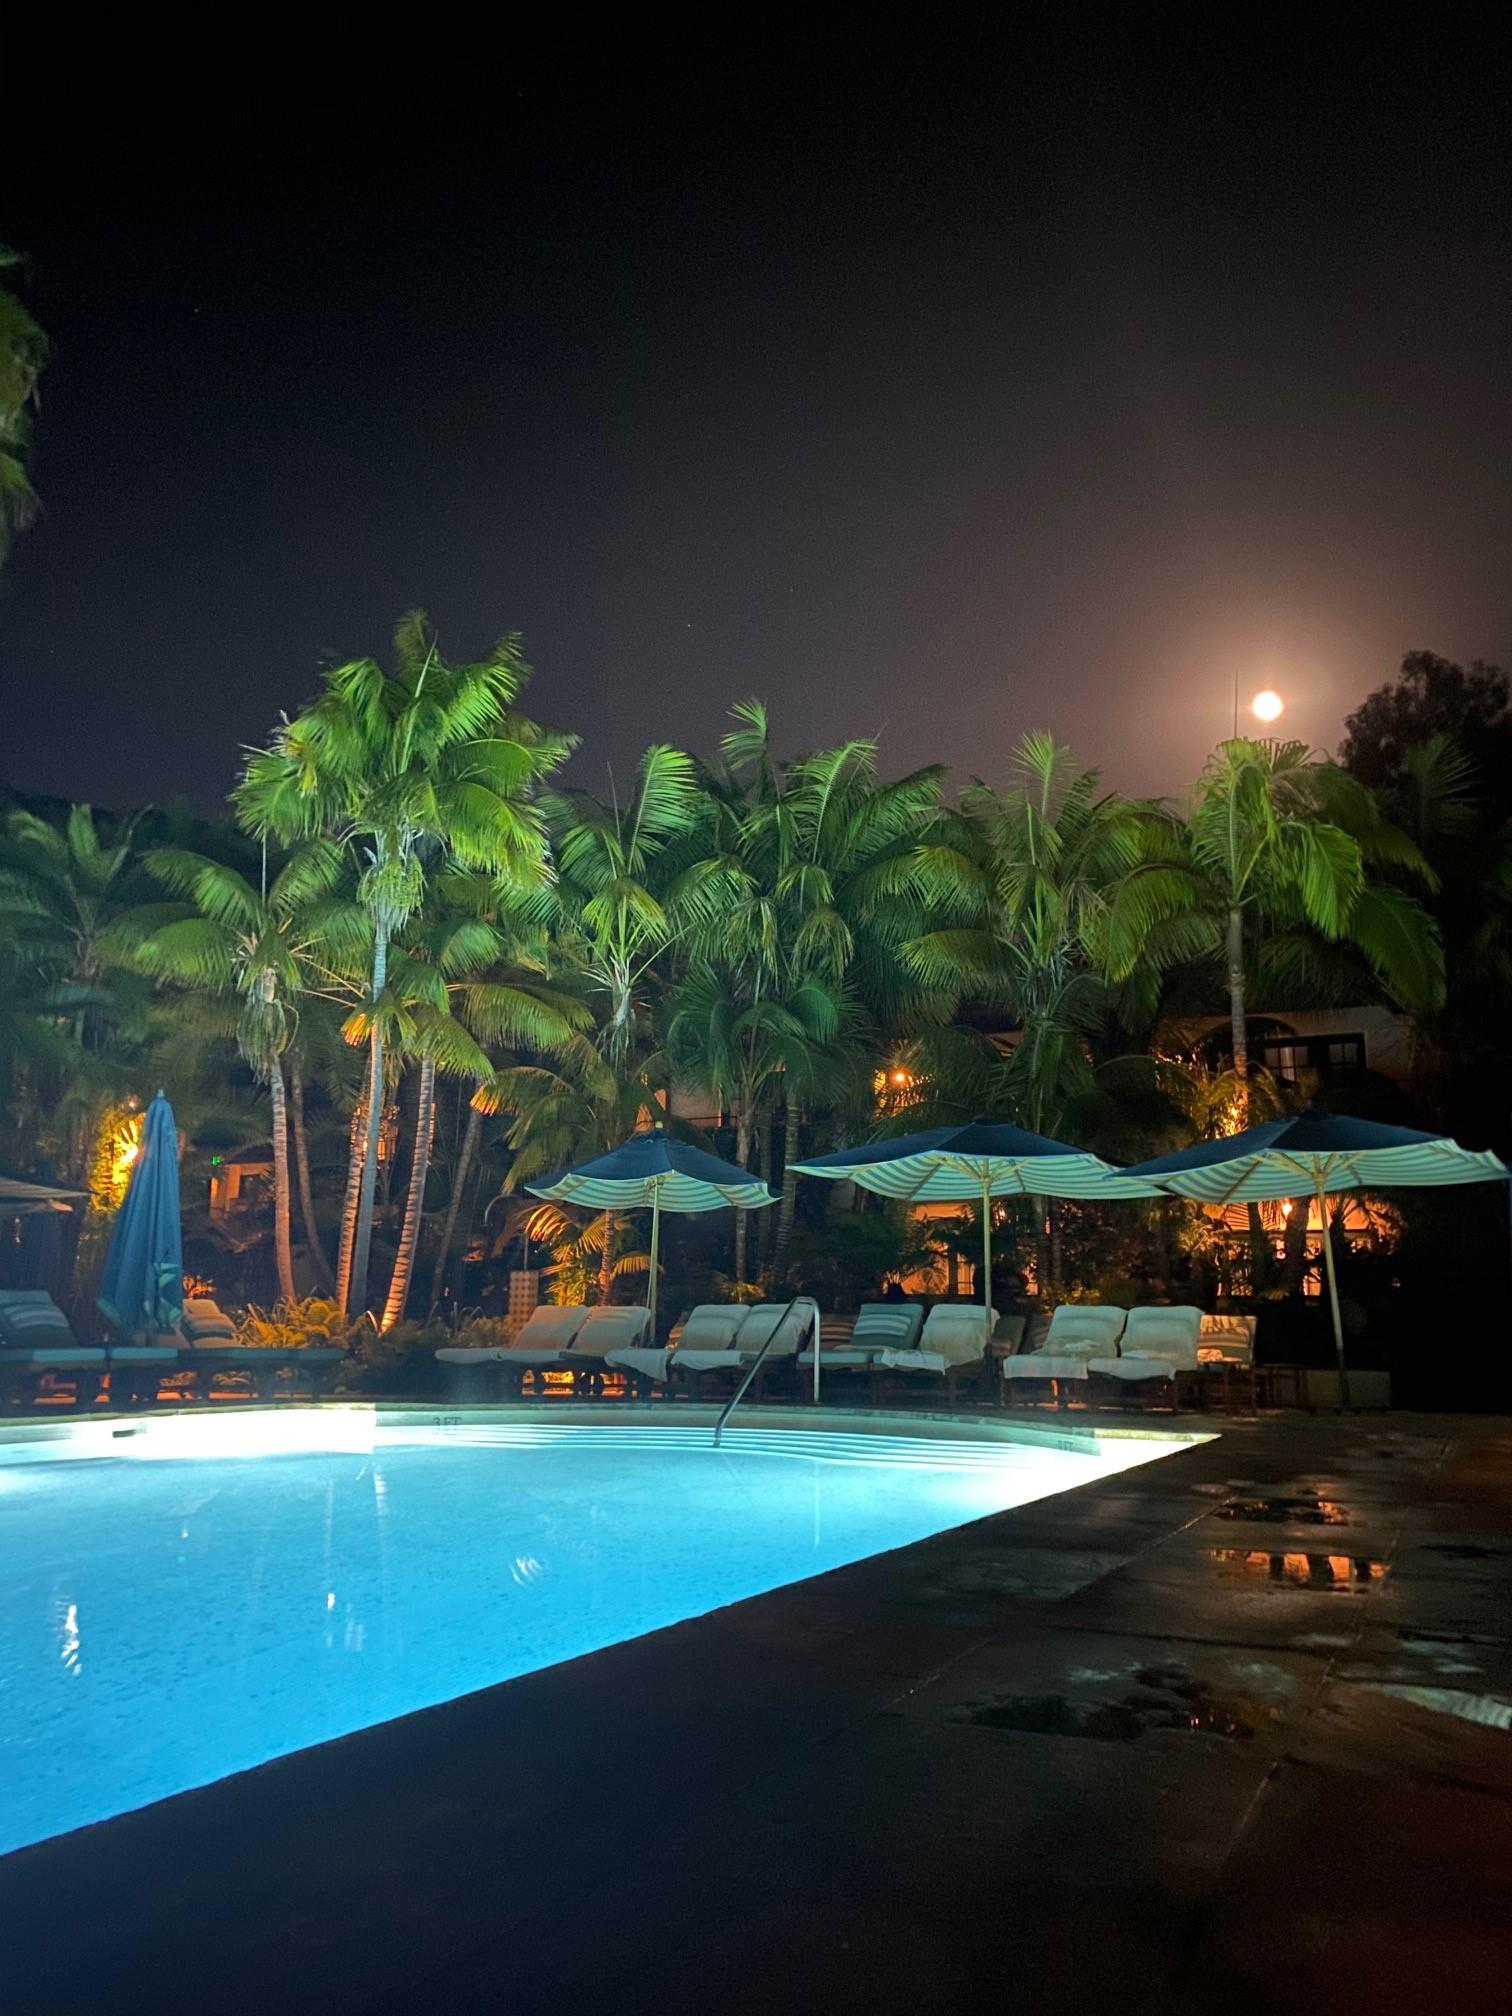 FS Santa Barbara Pool at Night